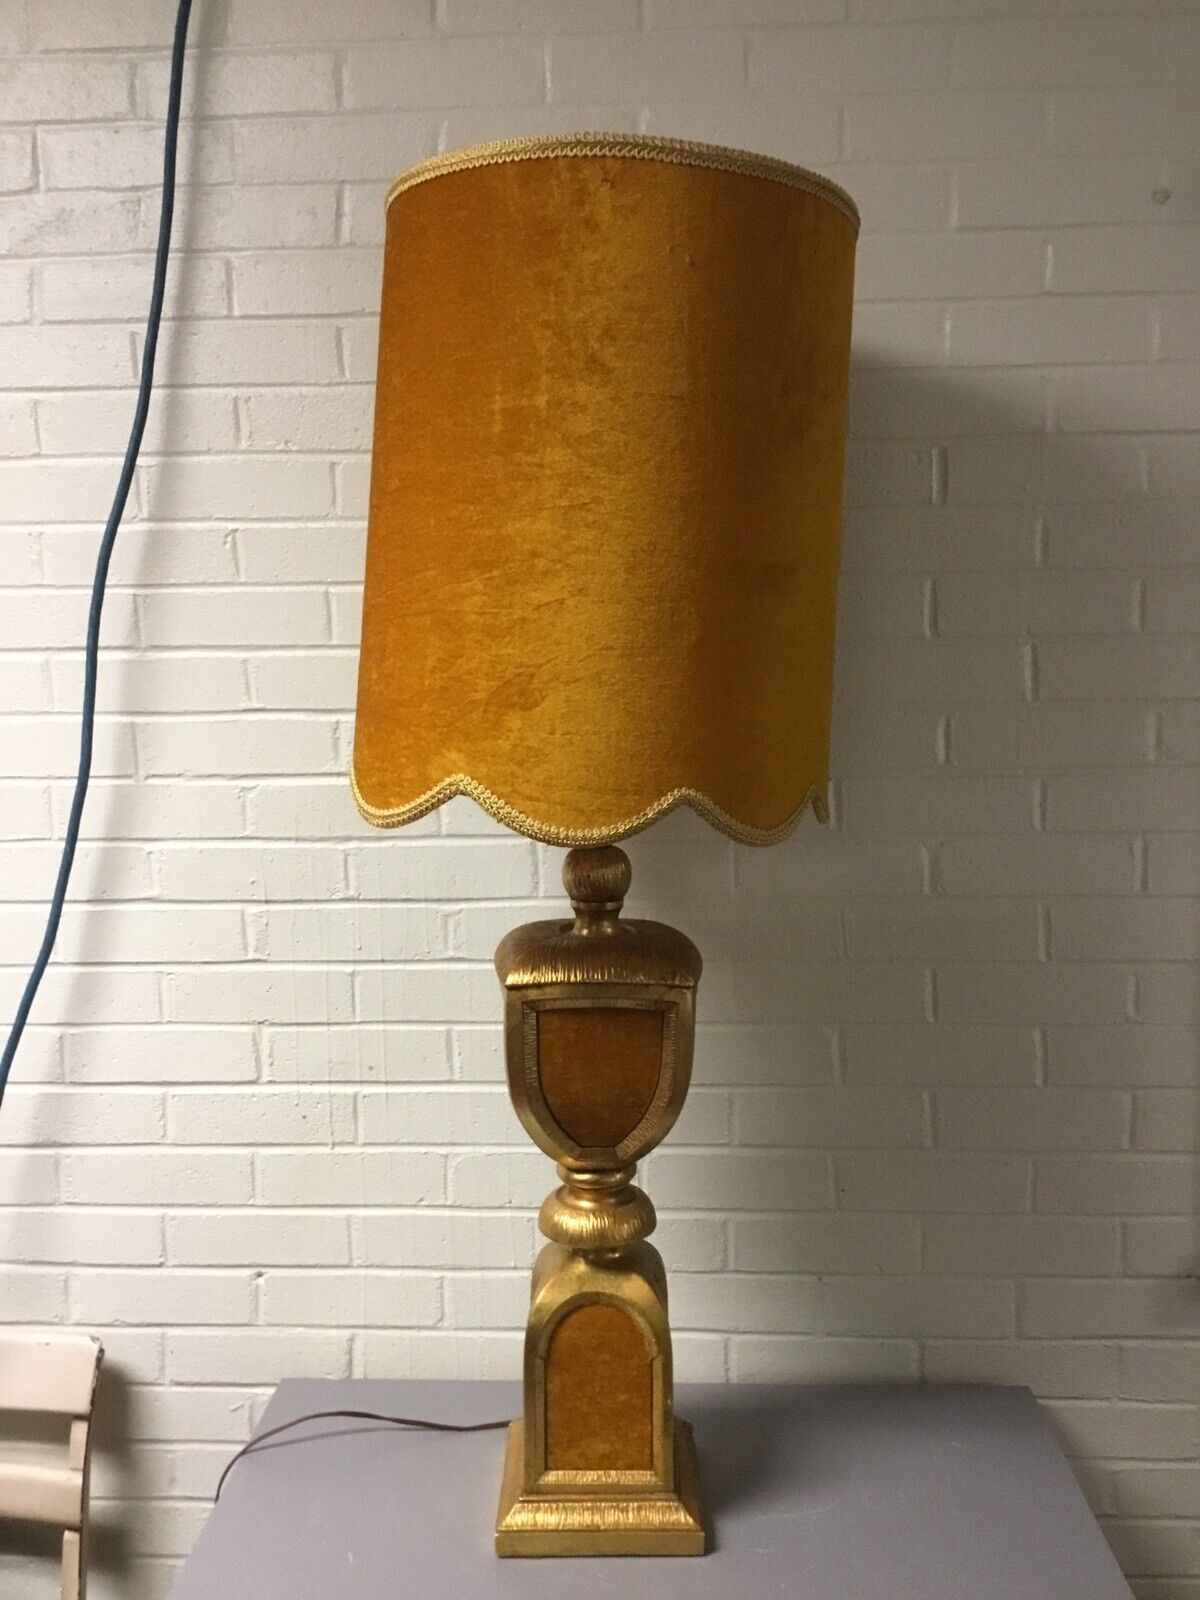 VTG HOLLYWOOD REGENCY MCM GOLD YELLOW VELVET LARGE TABLE LAMP 45” TALL BEAUTY